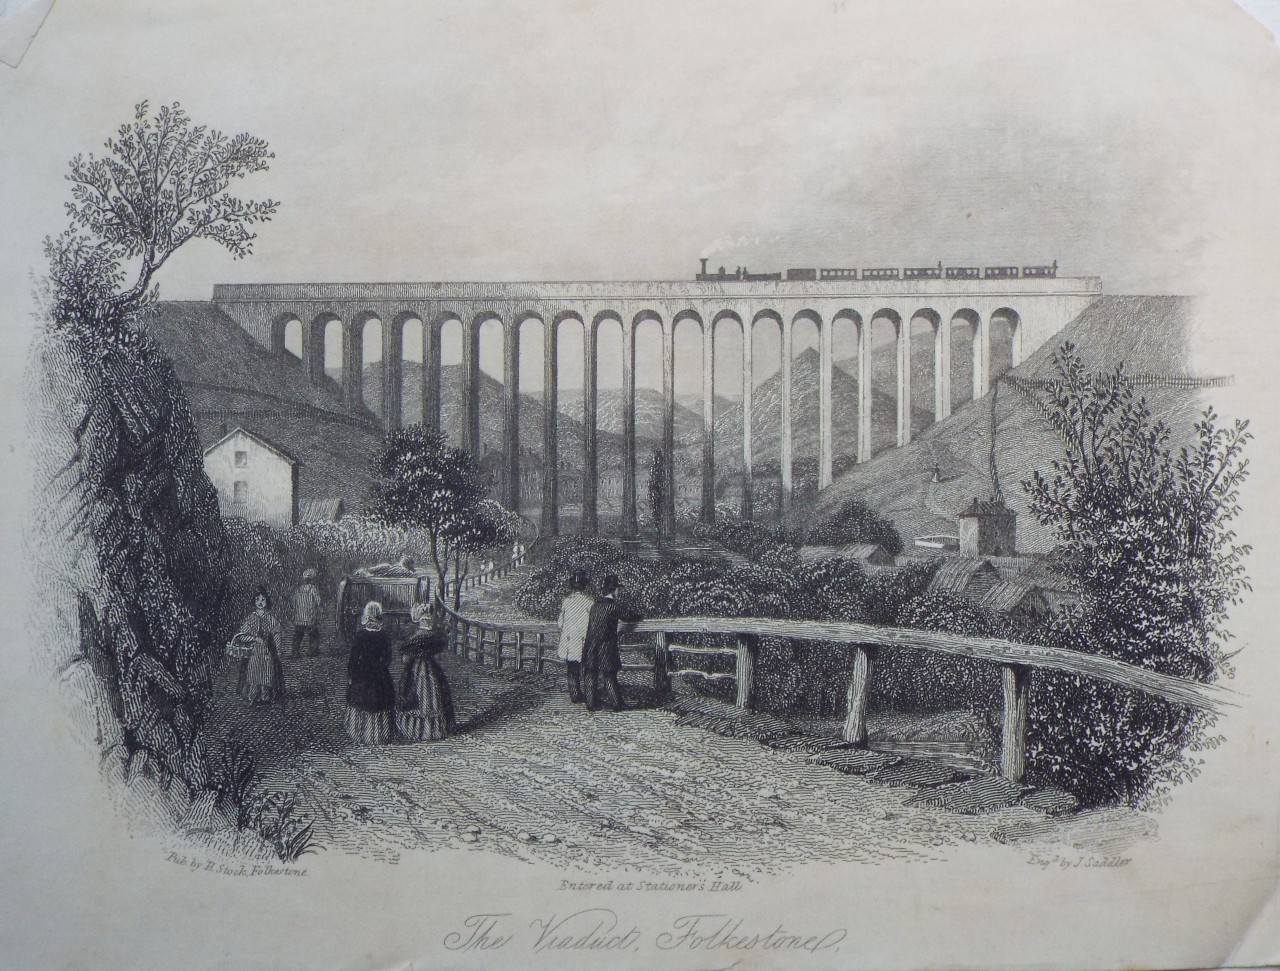 Steel Vignette - The Viaduct, Folkestone. - Saddler